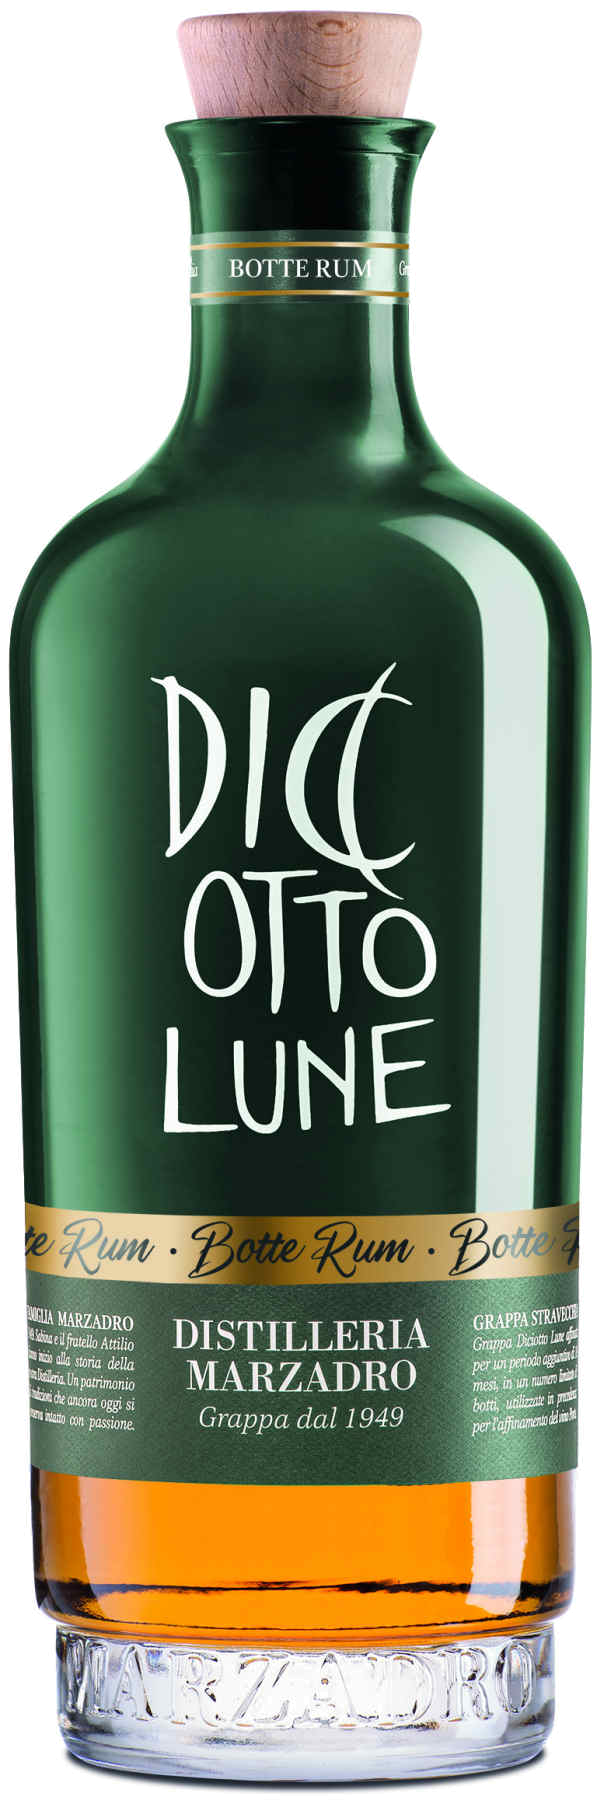 Marzadro Le Diciotto Lune Grappa Riserva Botte Rum 0,5L